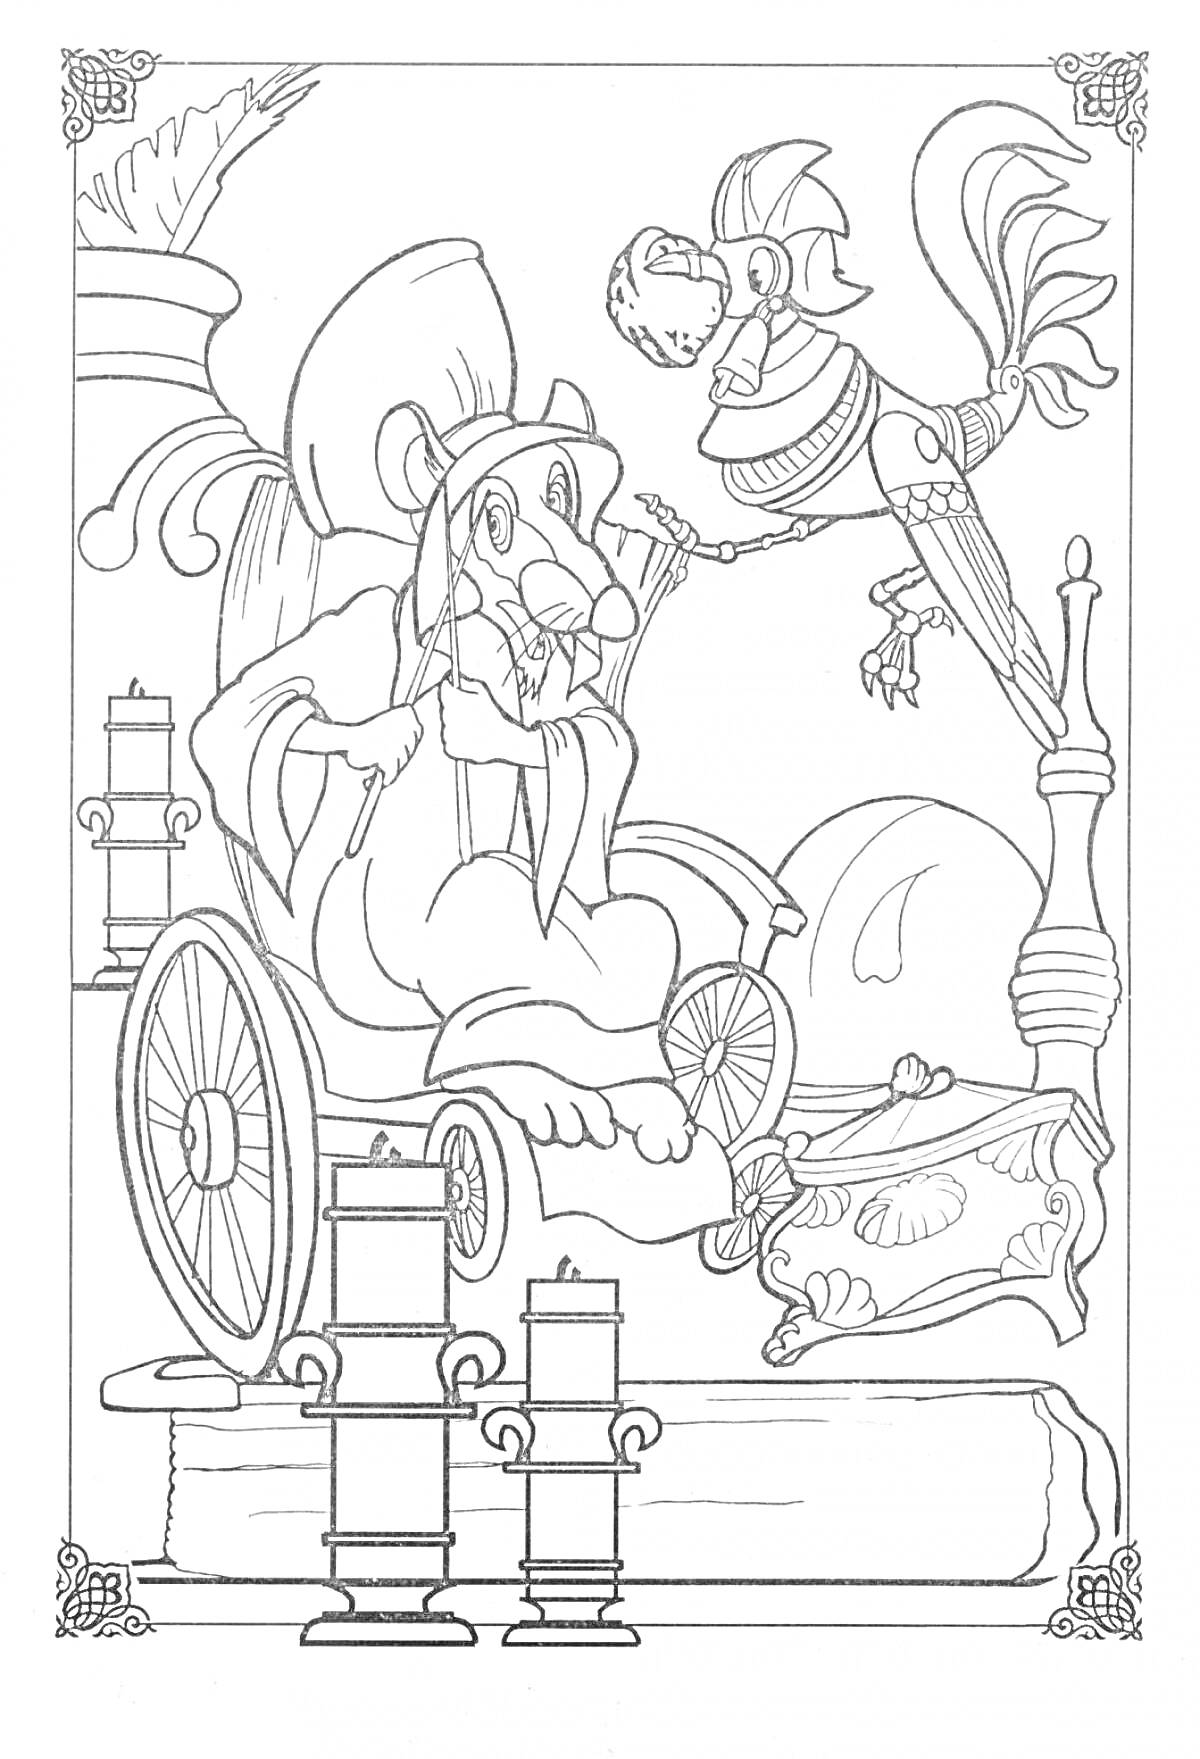 Щелкунчик и Король мышей на троне с палицей, свечами, книгами и пауком